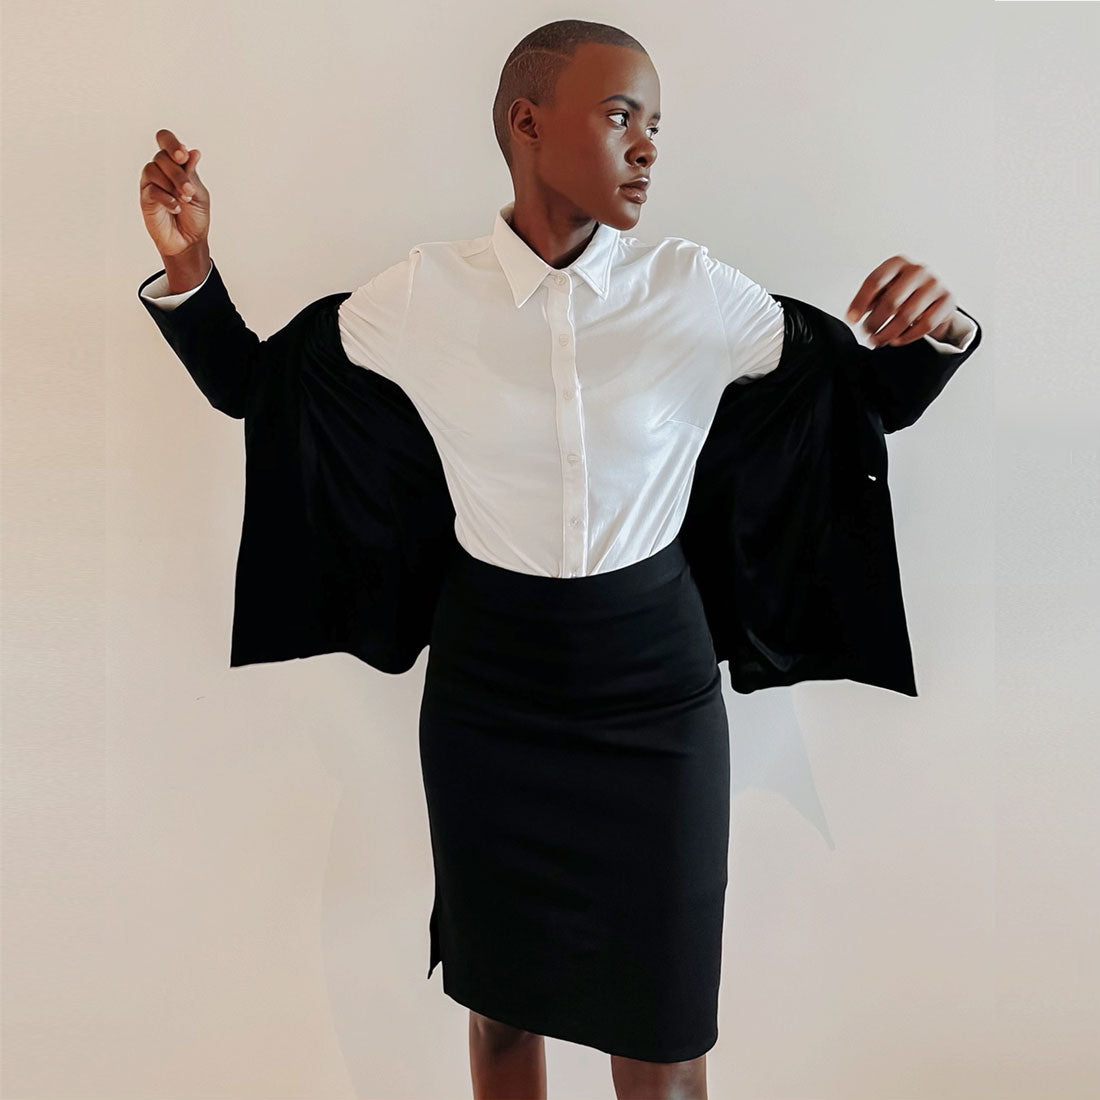 https://ergonaut.co/cdn/shop/products/woman-in-a-high-waisted-black-skirt.jpg?v=1658904974&width=1445